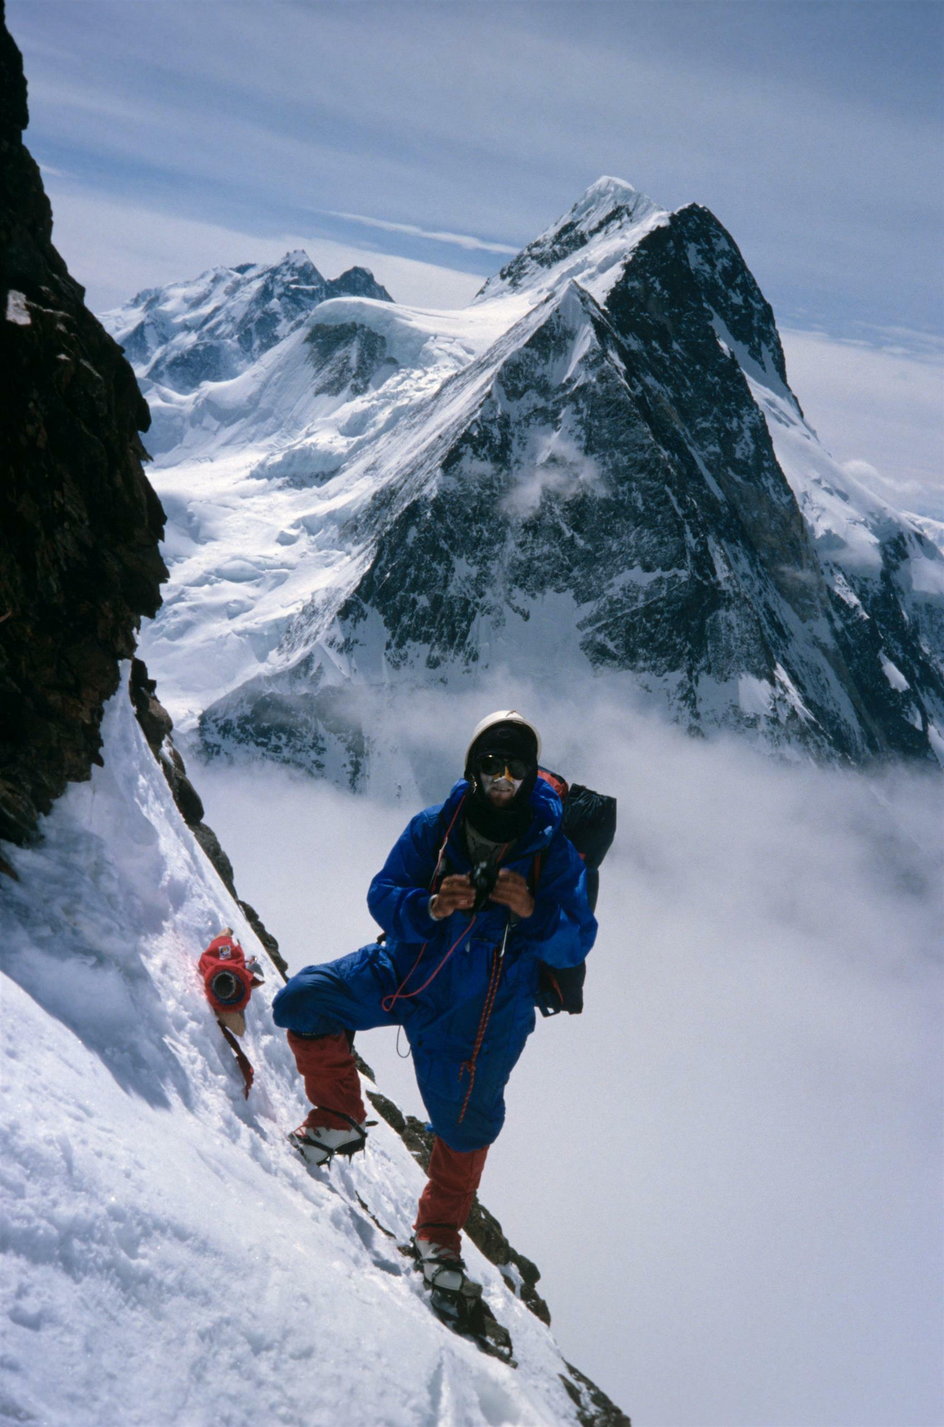 Wojciech Kurtyka, a w tle masyw Broad Peak w Karakorum. Wspinacz zdobył ten szczyt wraz z Jerzym Kukuczką, oczywiście w stylu alpejskim